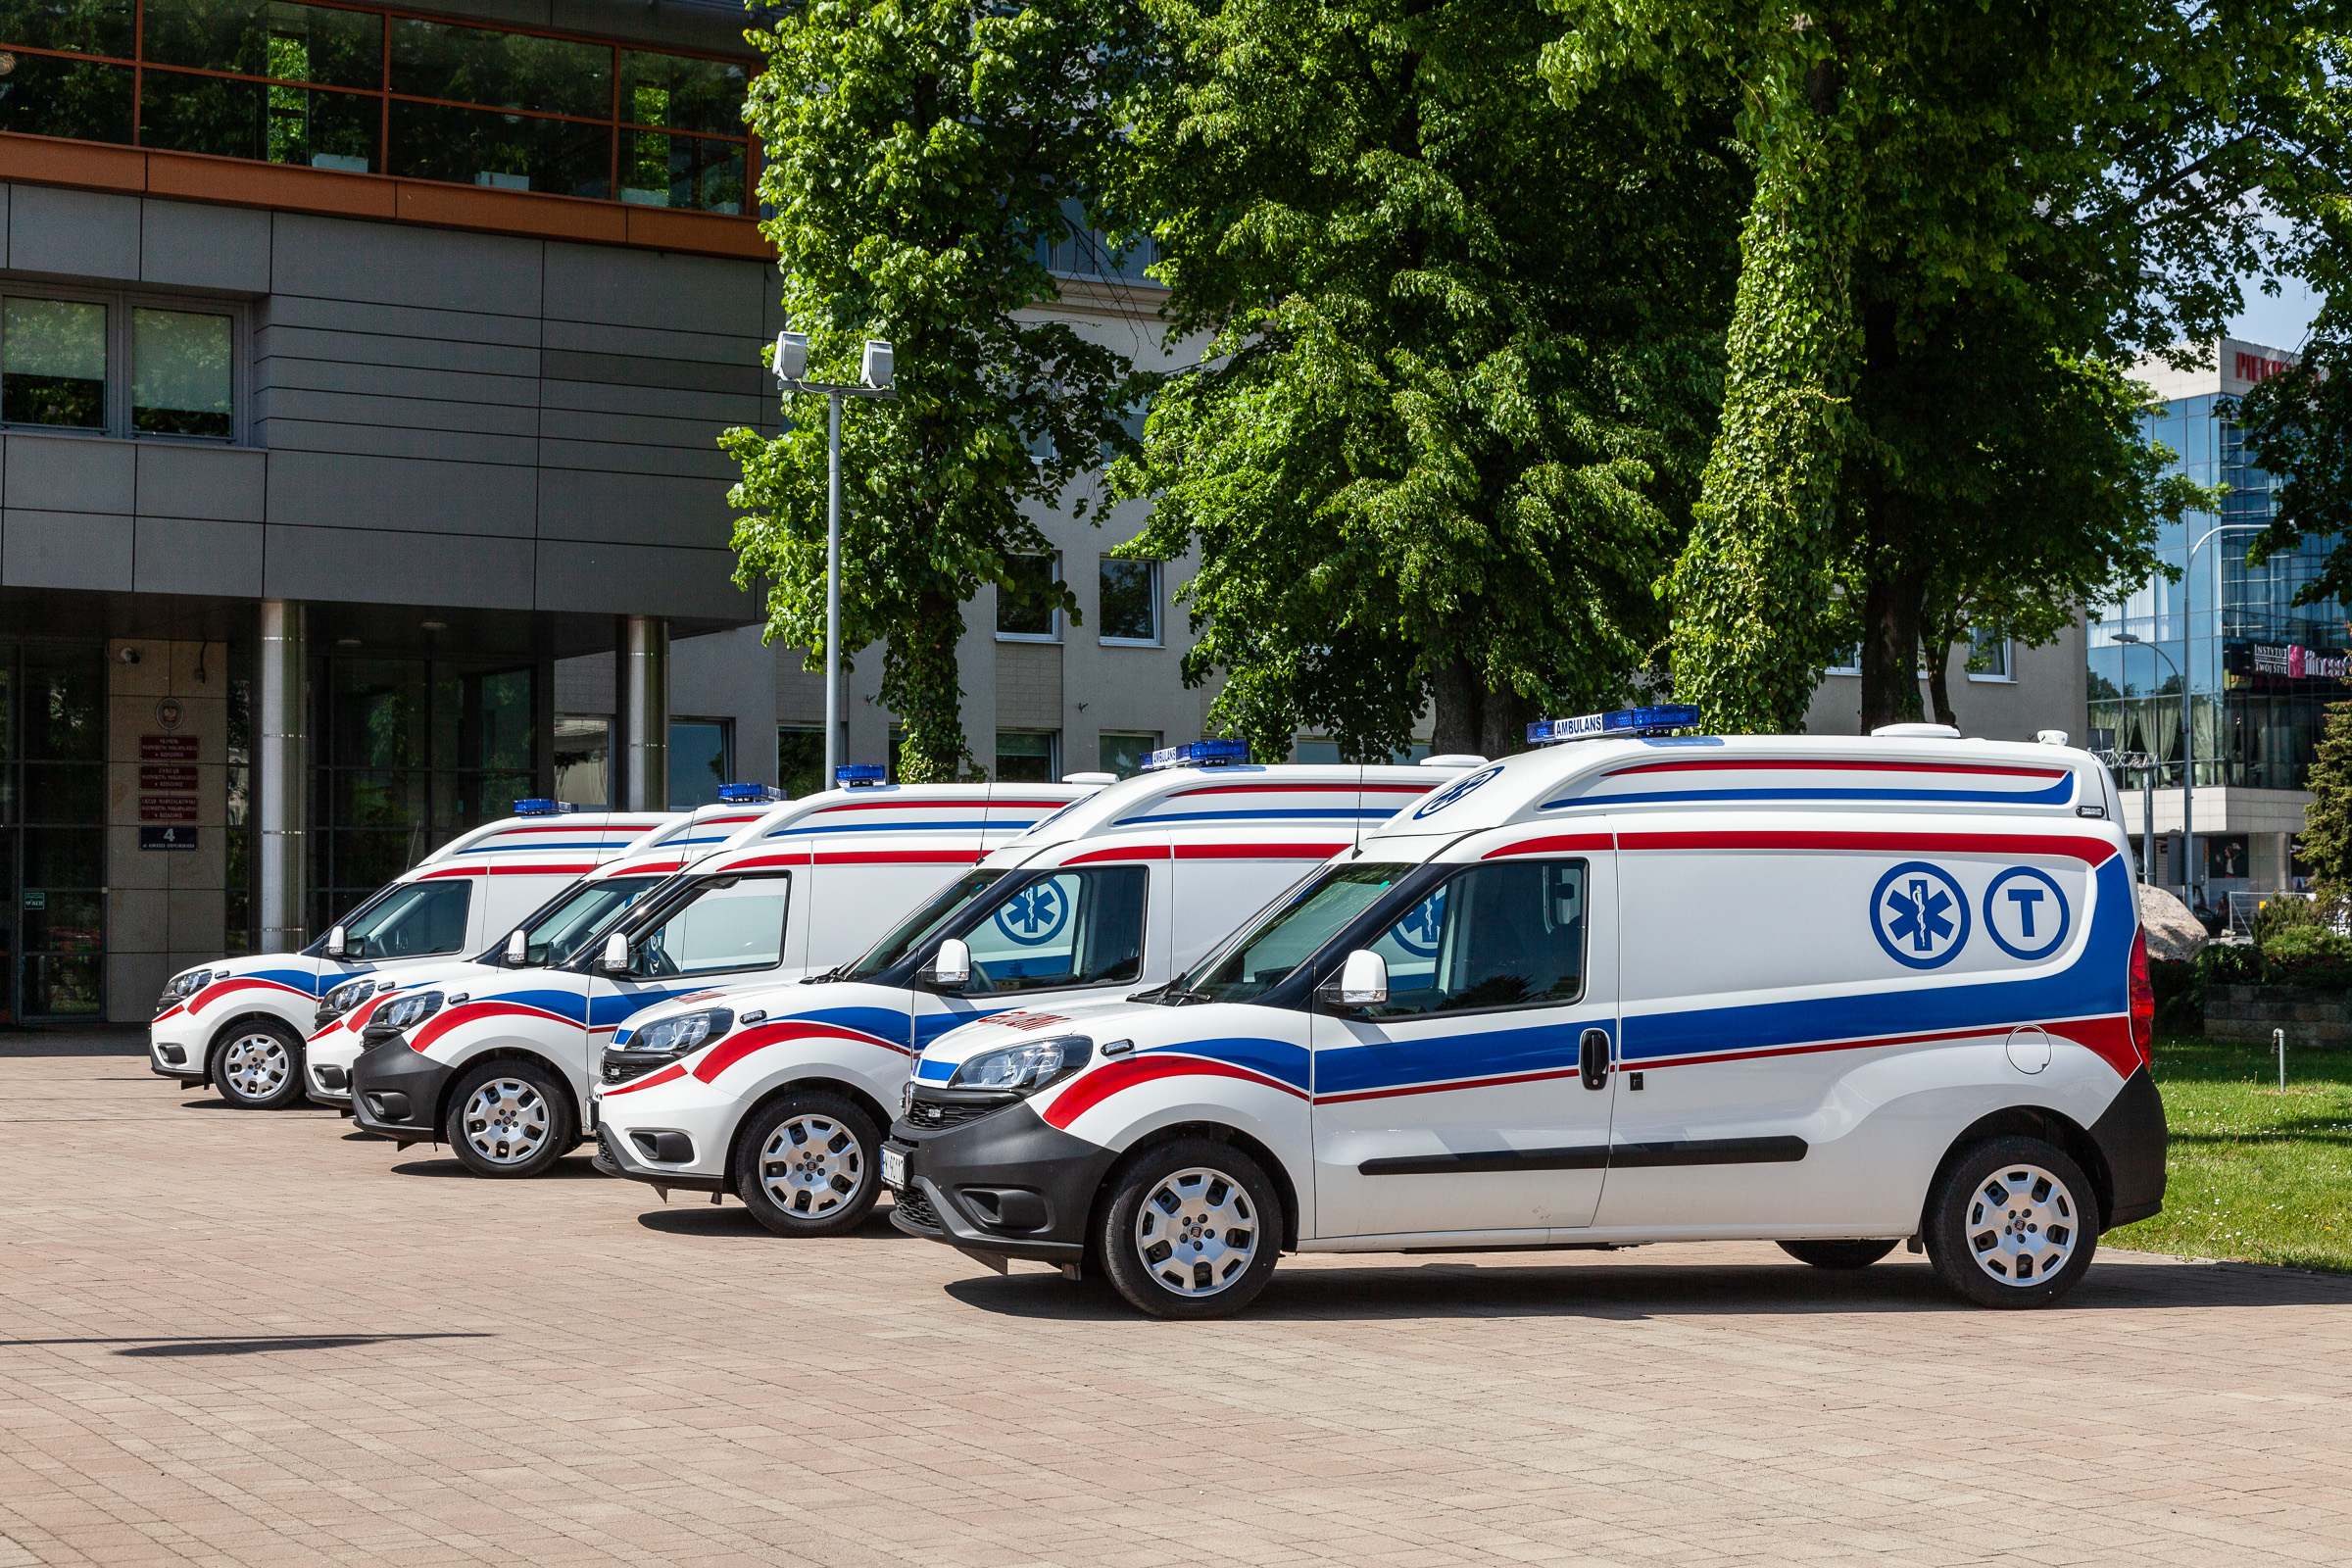 Prezentacja nowych ambulansów przed Urzędem Marszałkowskim w Rzeszowie.